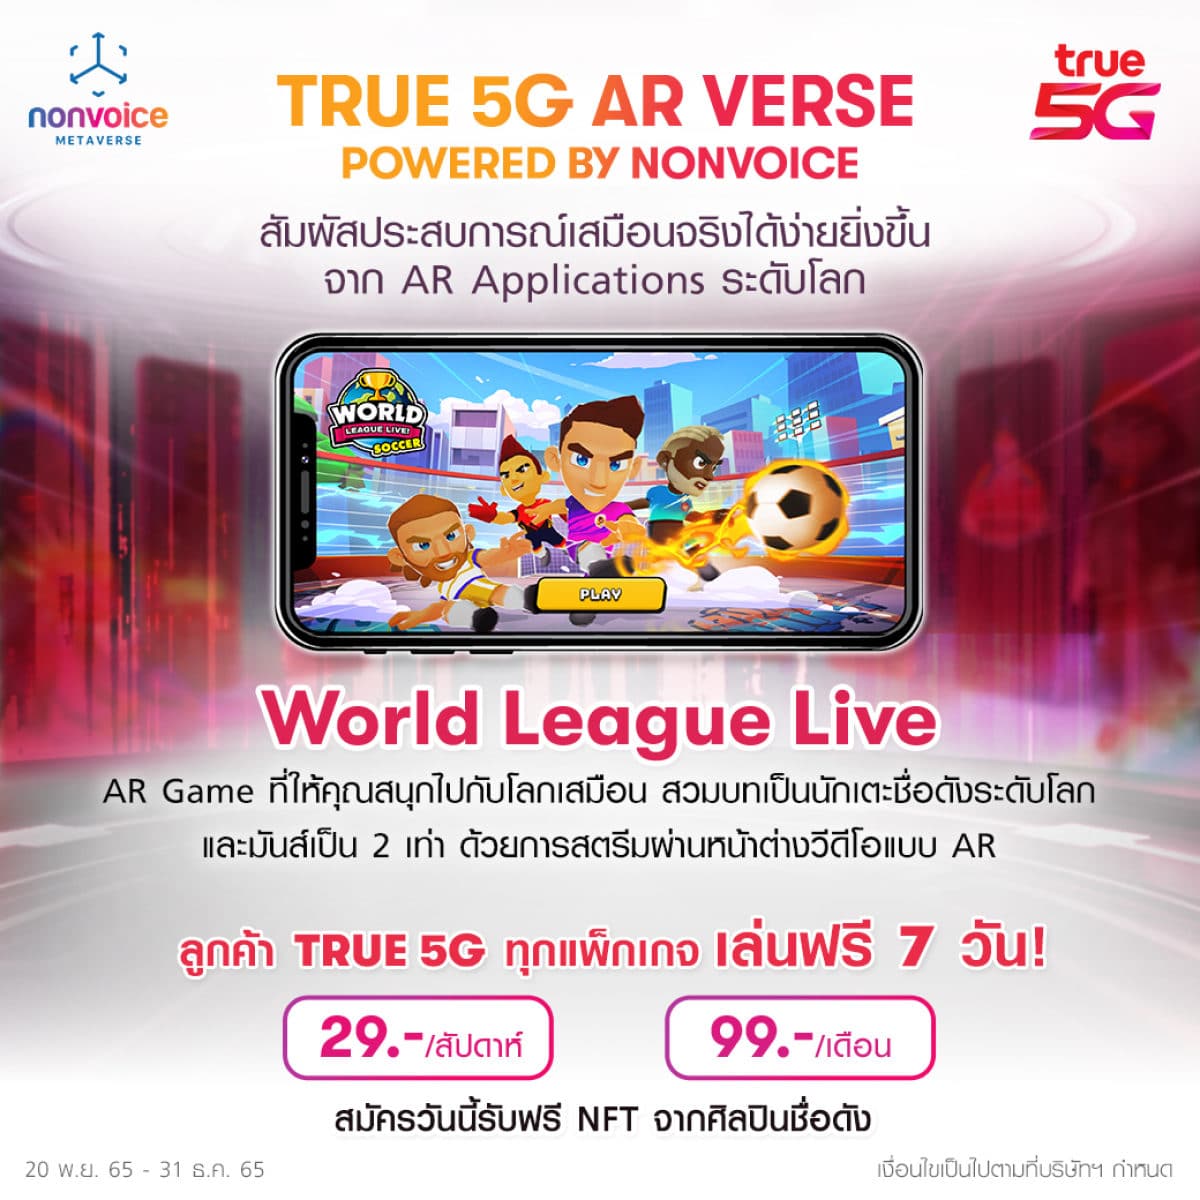 True-5G-World-League-AR-Verse